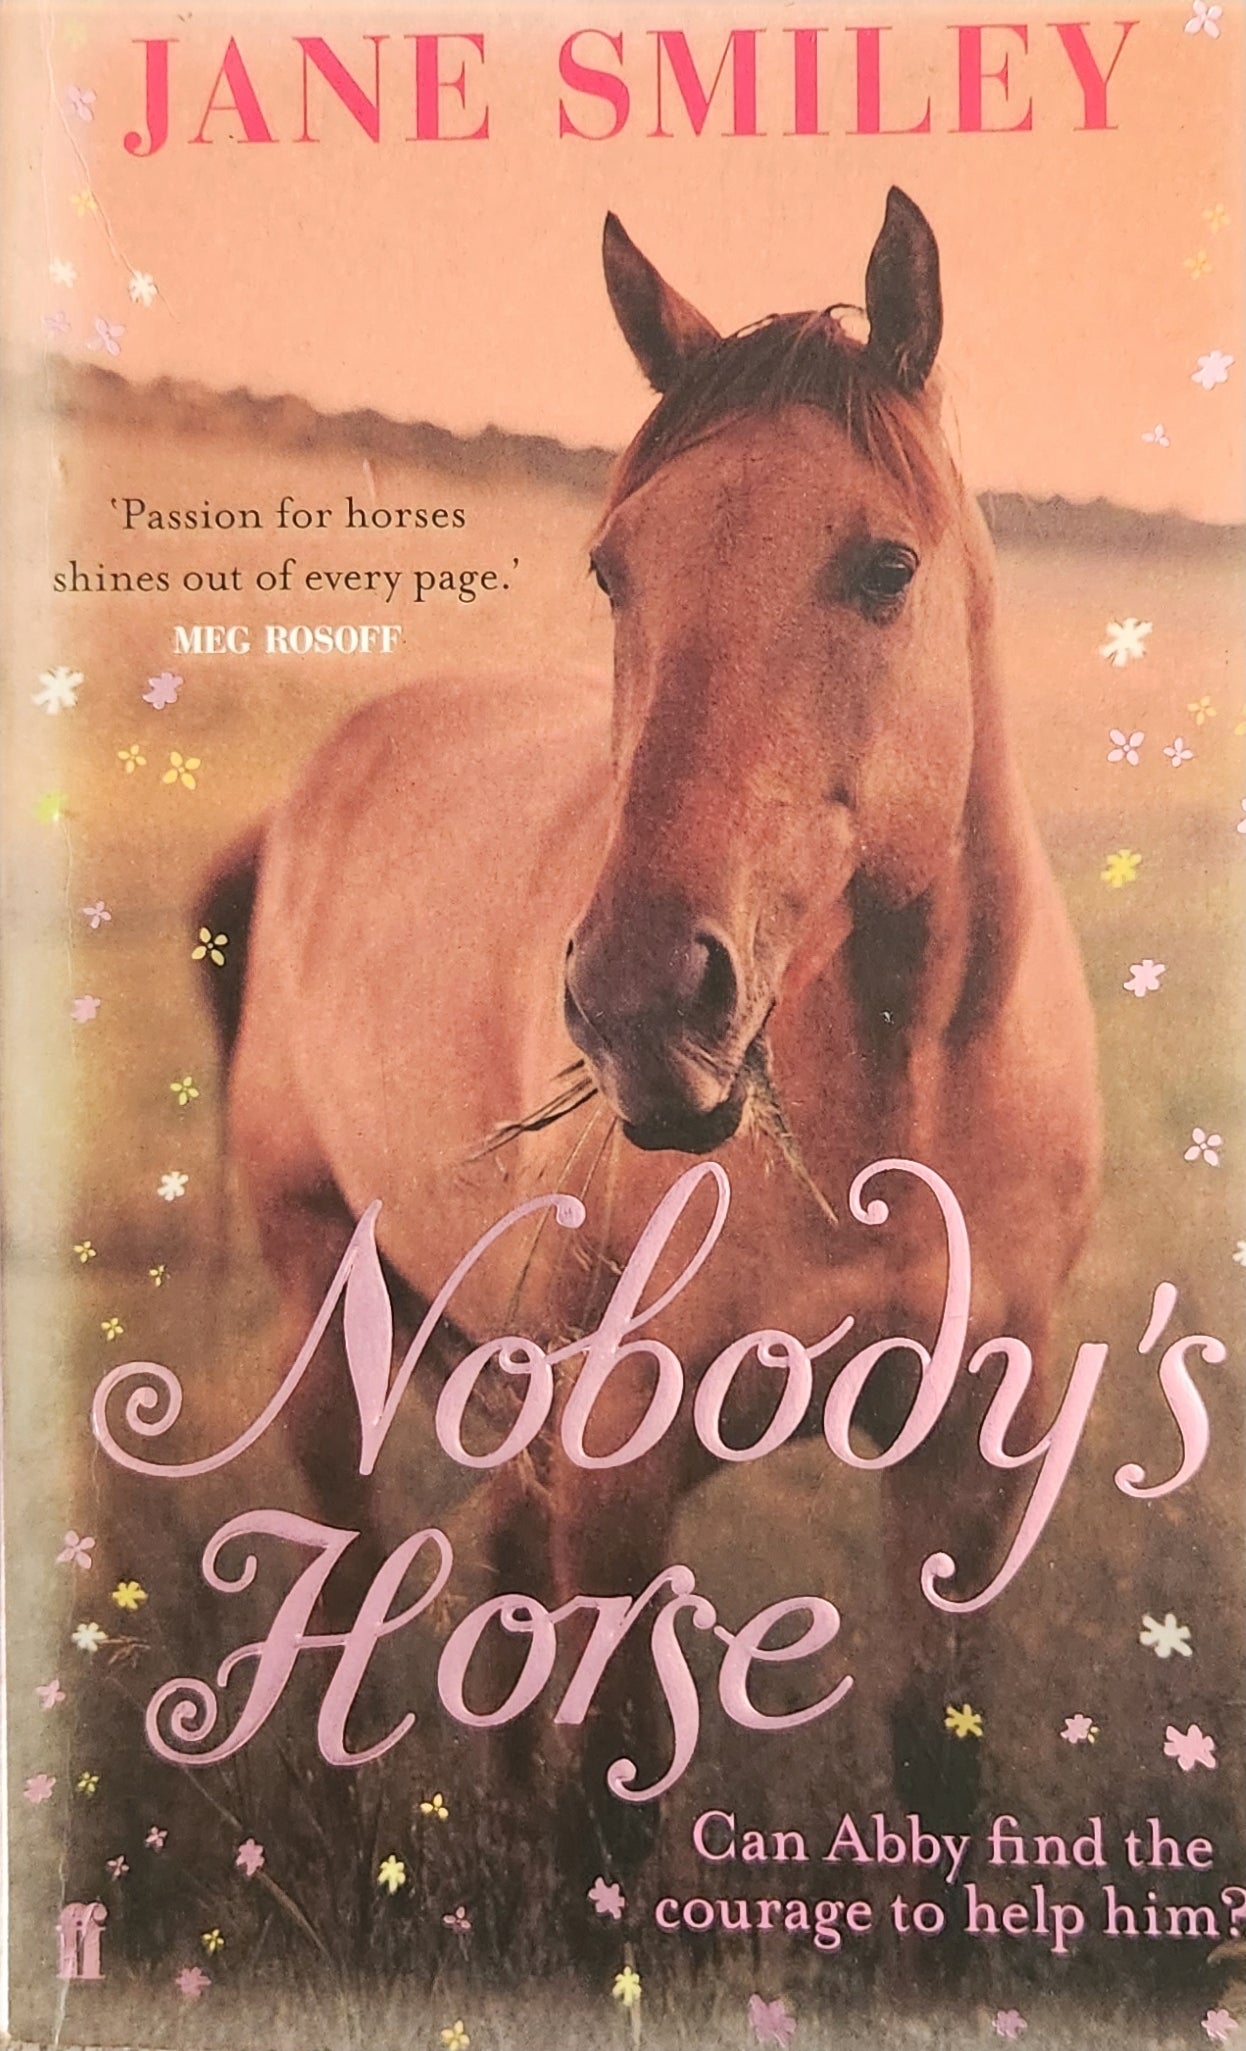 Nobody's Horse